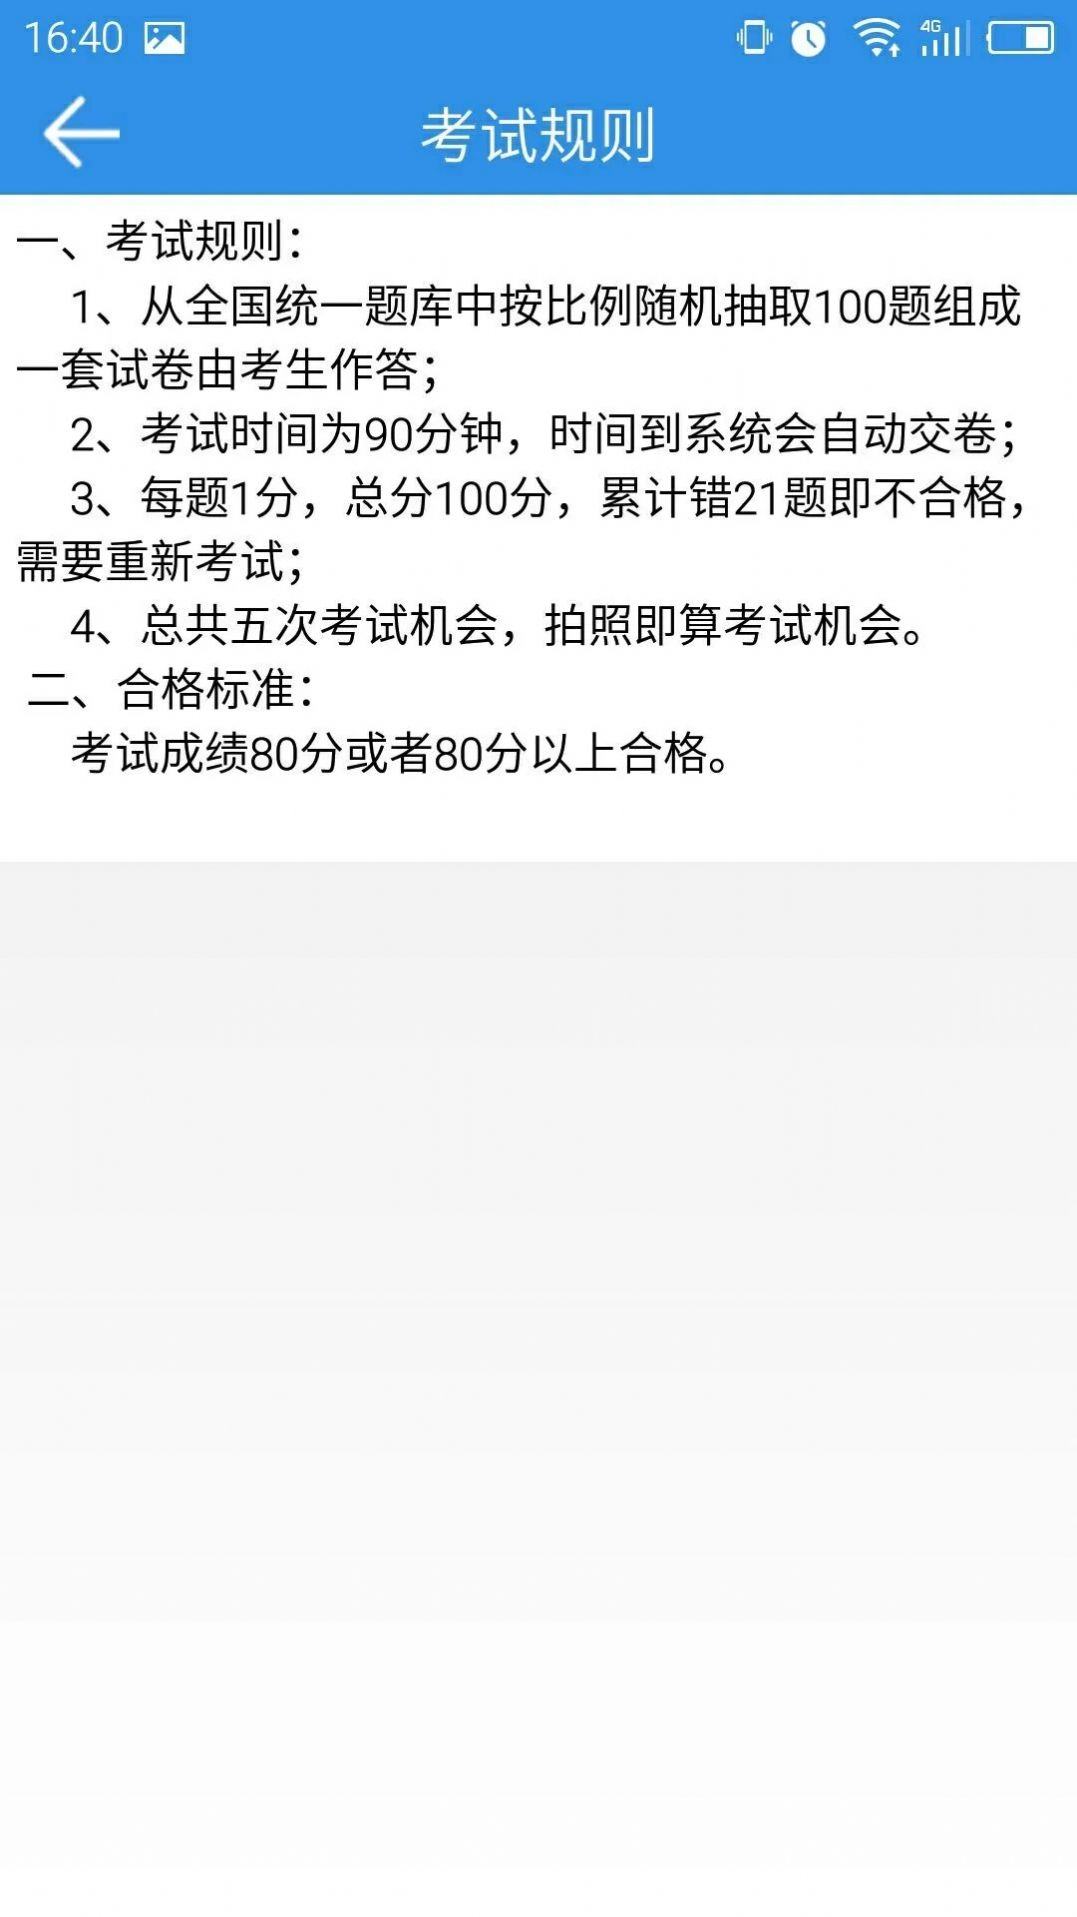 巨峰安培app图3